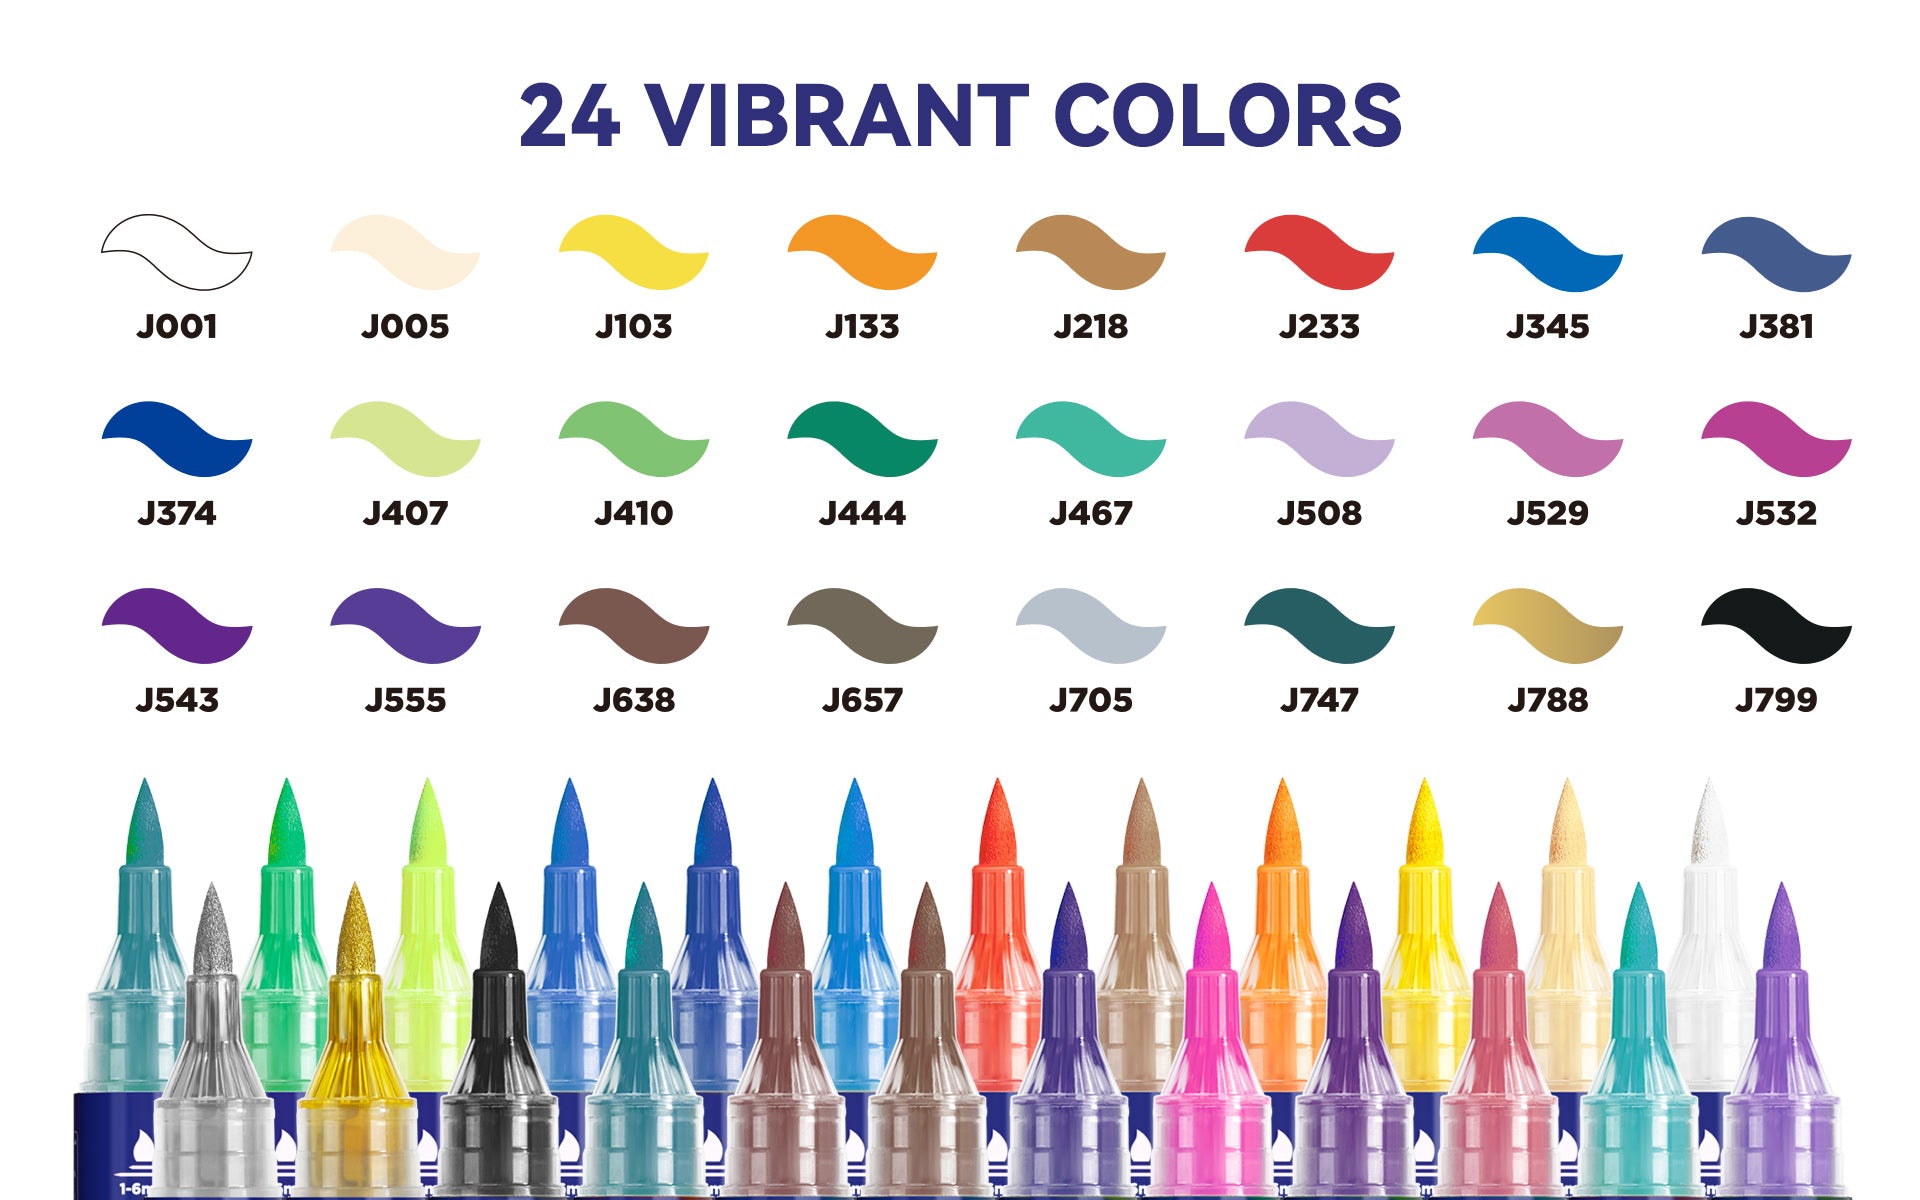 Arrtx 24 Colors Simptap Acrylic Marker Top Valve Action Markers Brush –  ArrtxArt